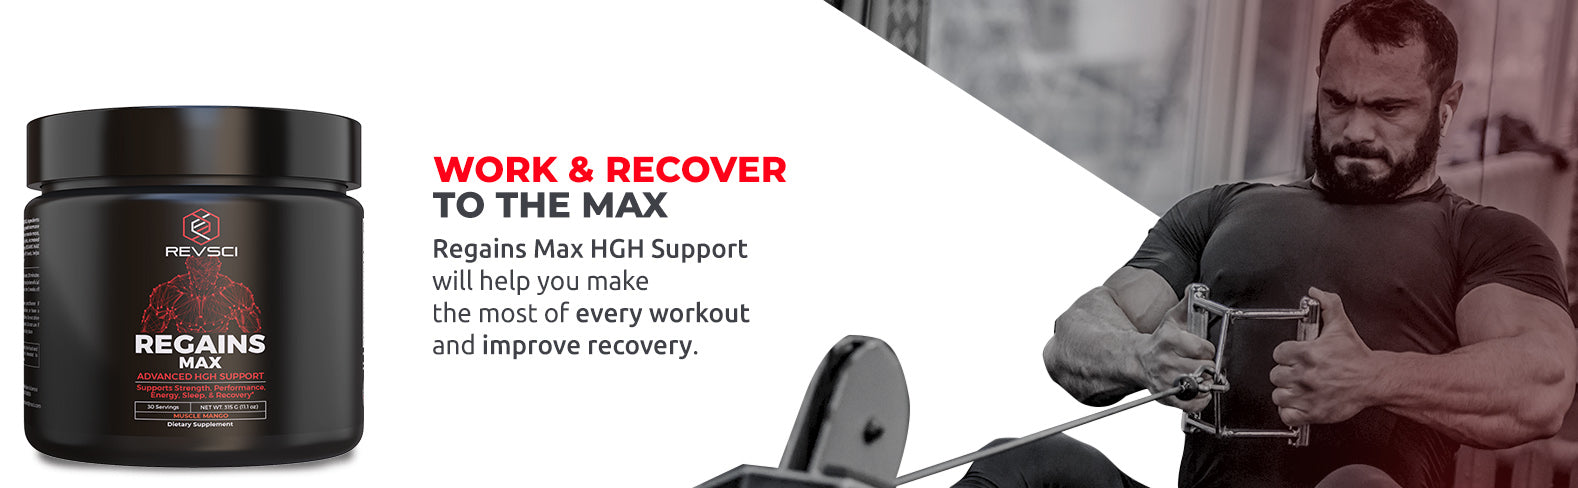 Recupera el soporte MAX HGH: trabaje y recupérese al MAX